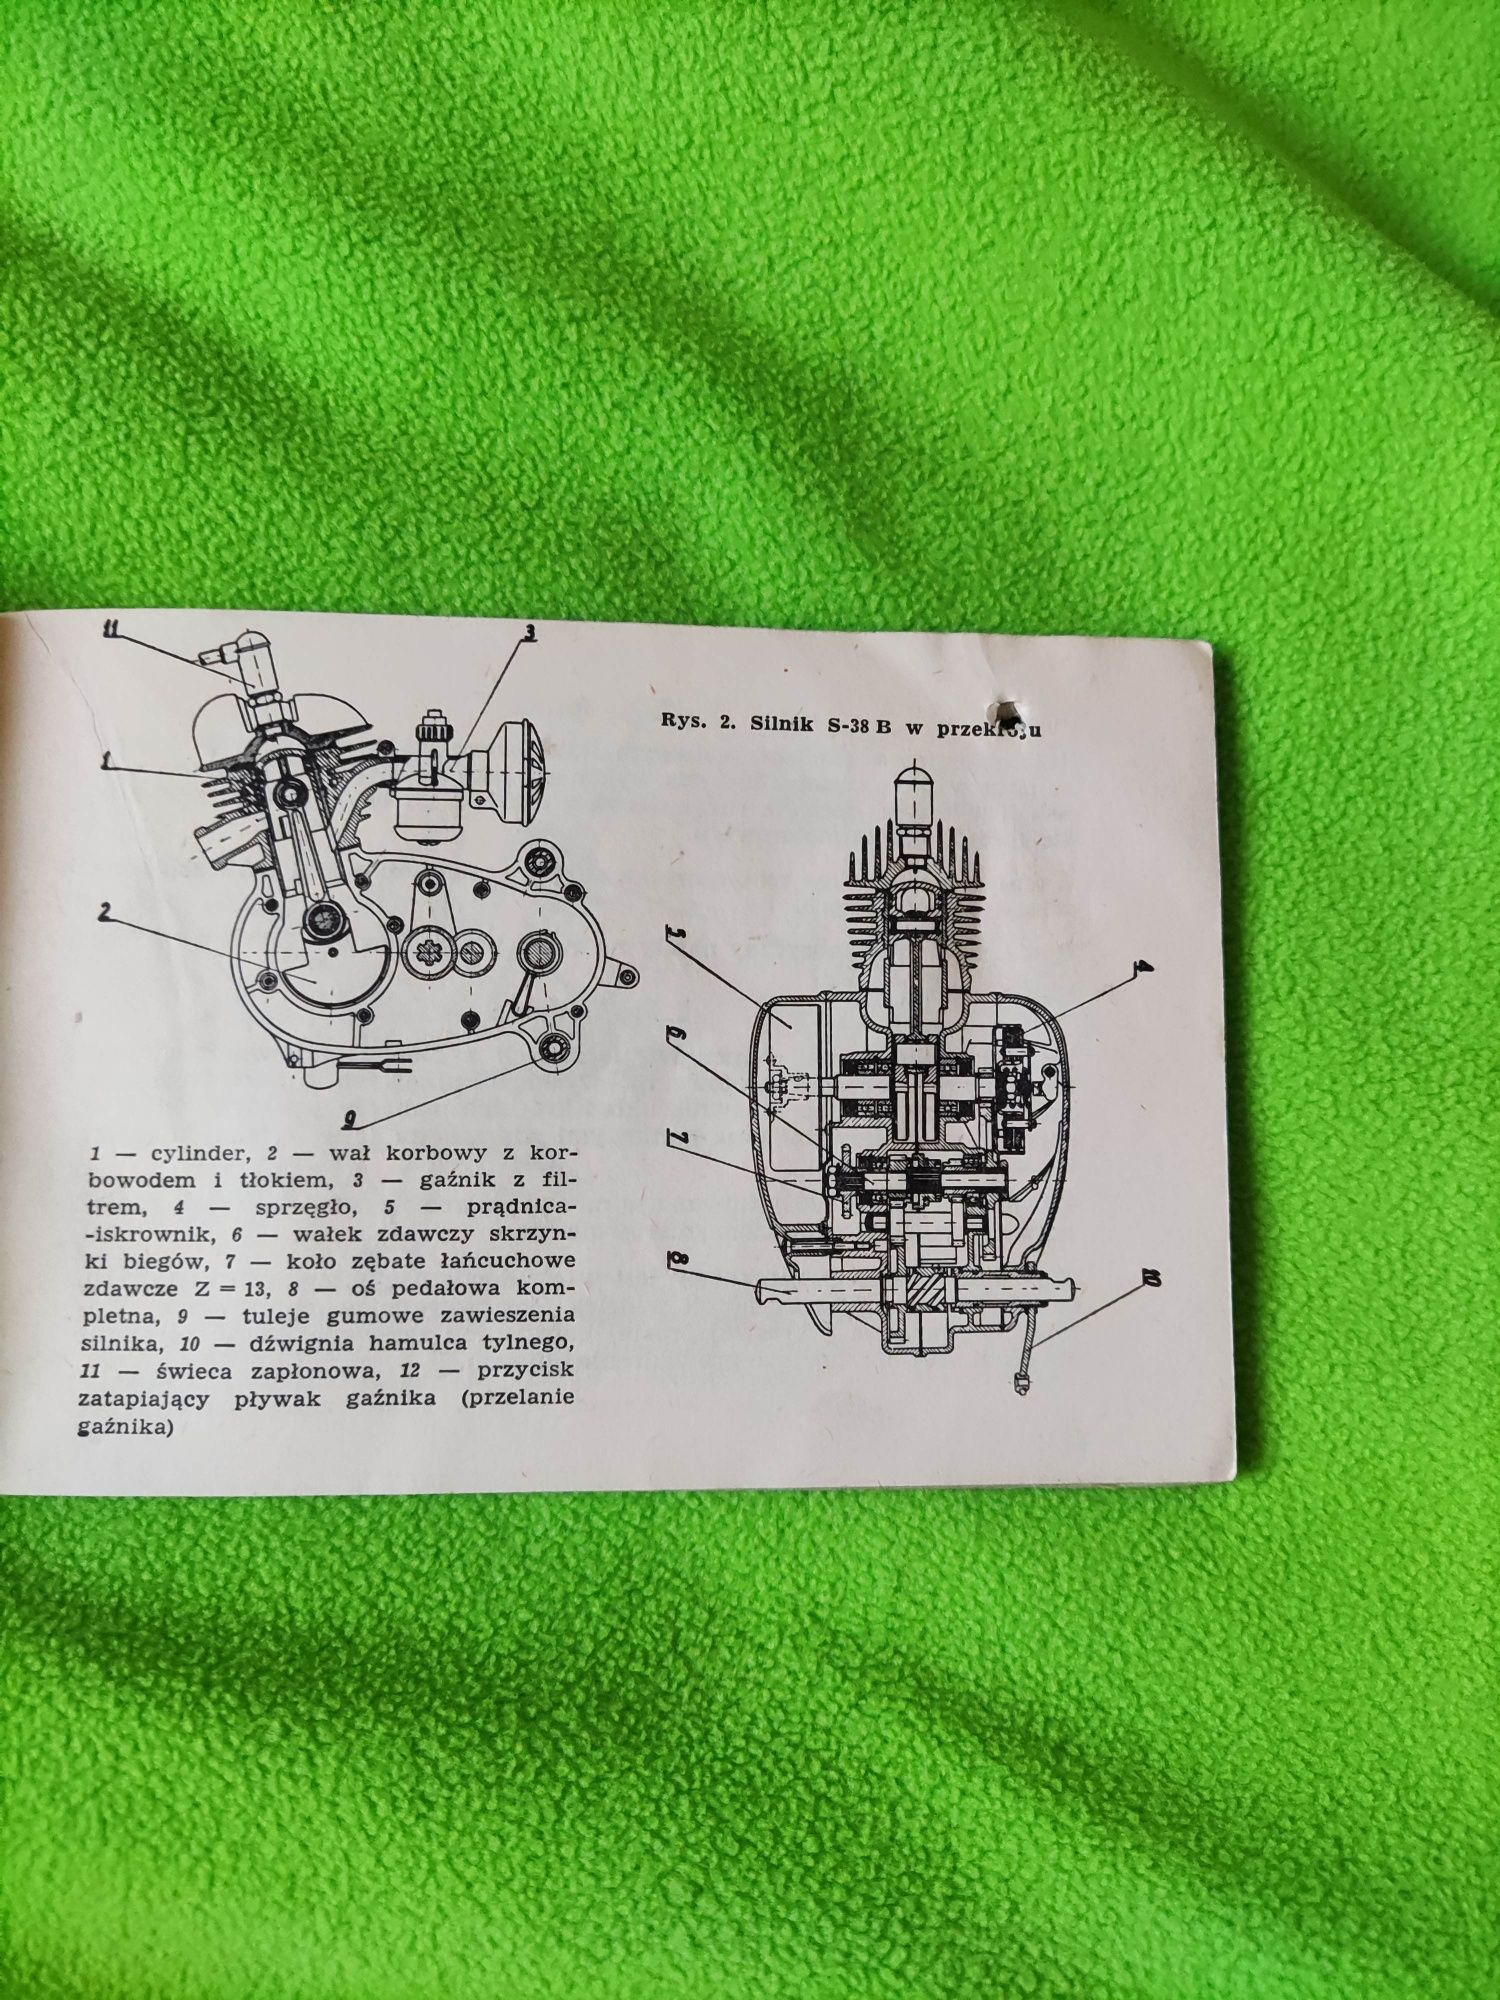 Instrukcja obsługi motoroweru Komar z roku 1964 ZZR

Stan jak na zdjęc